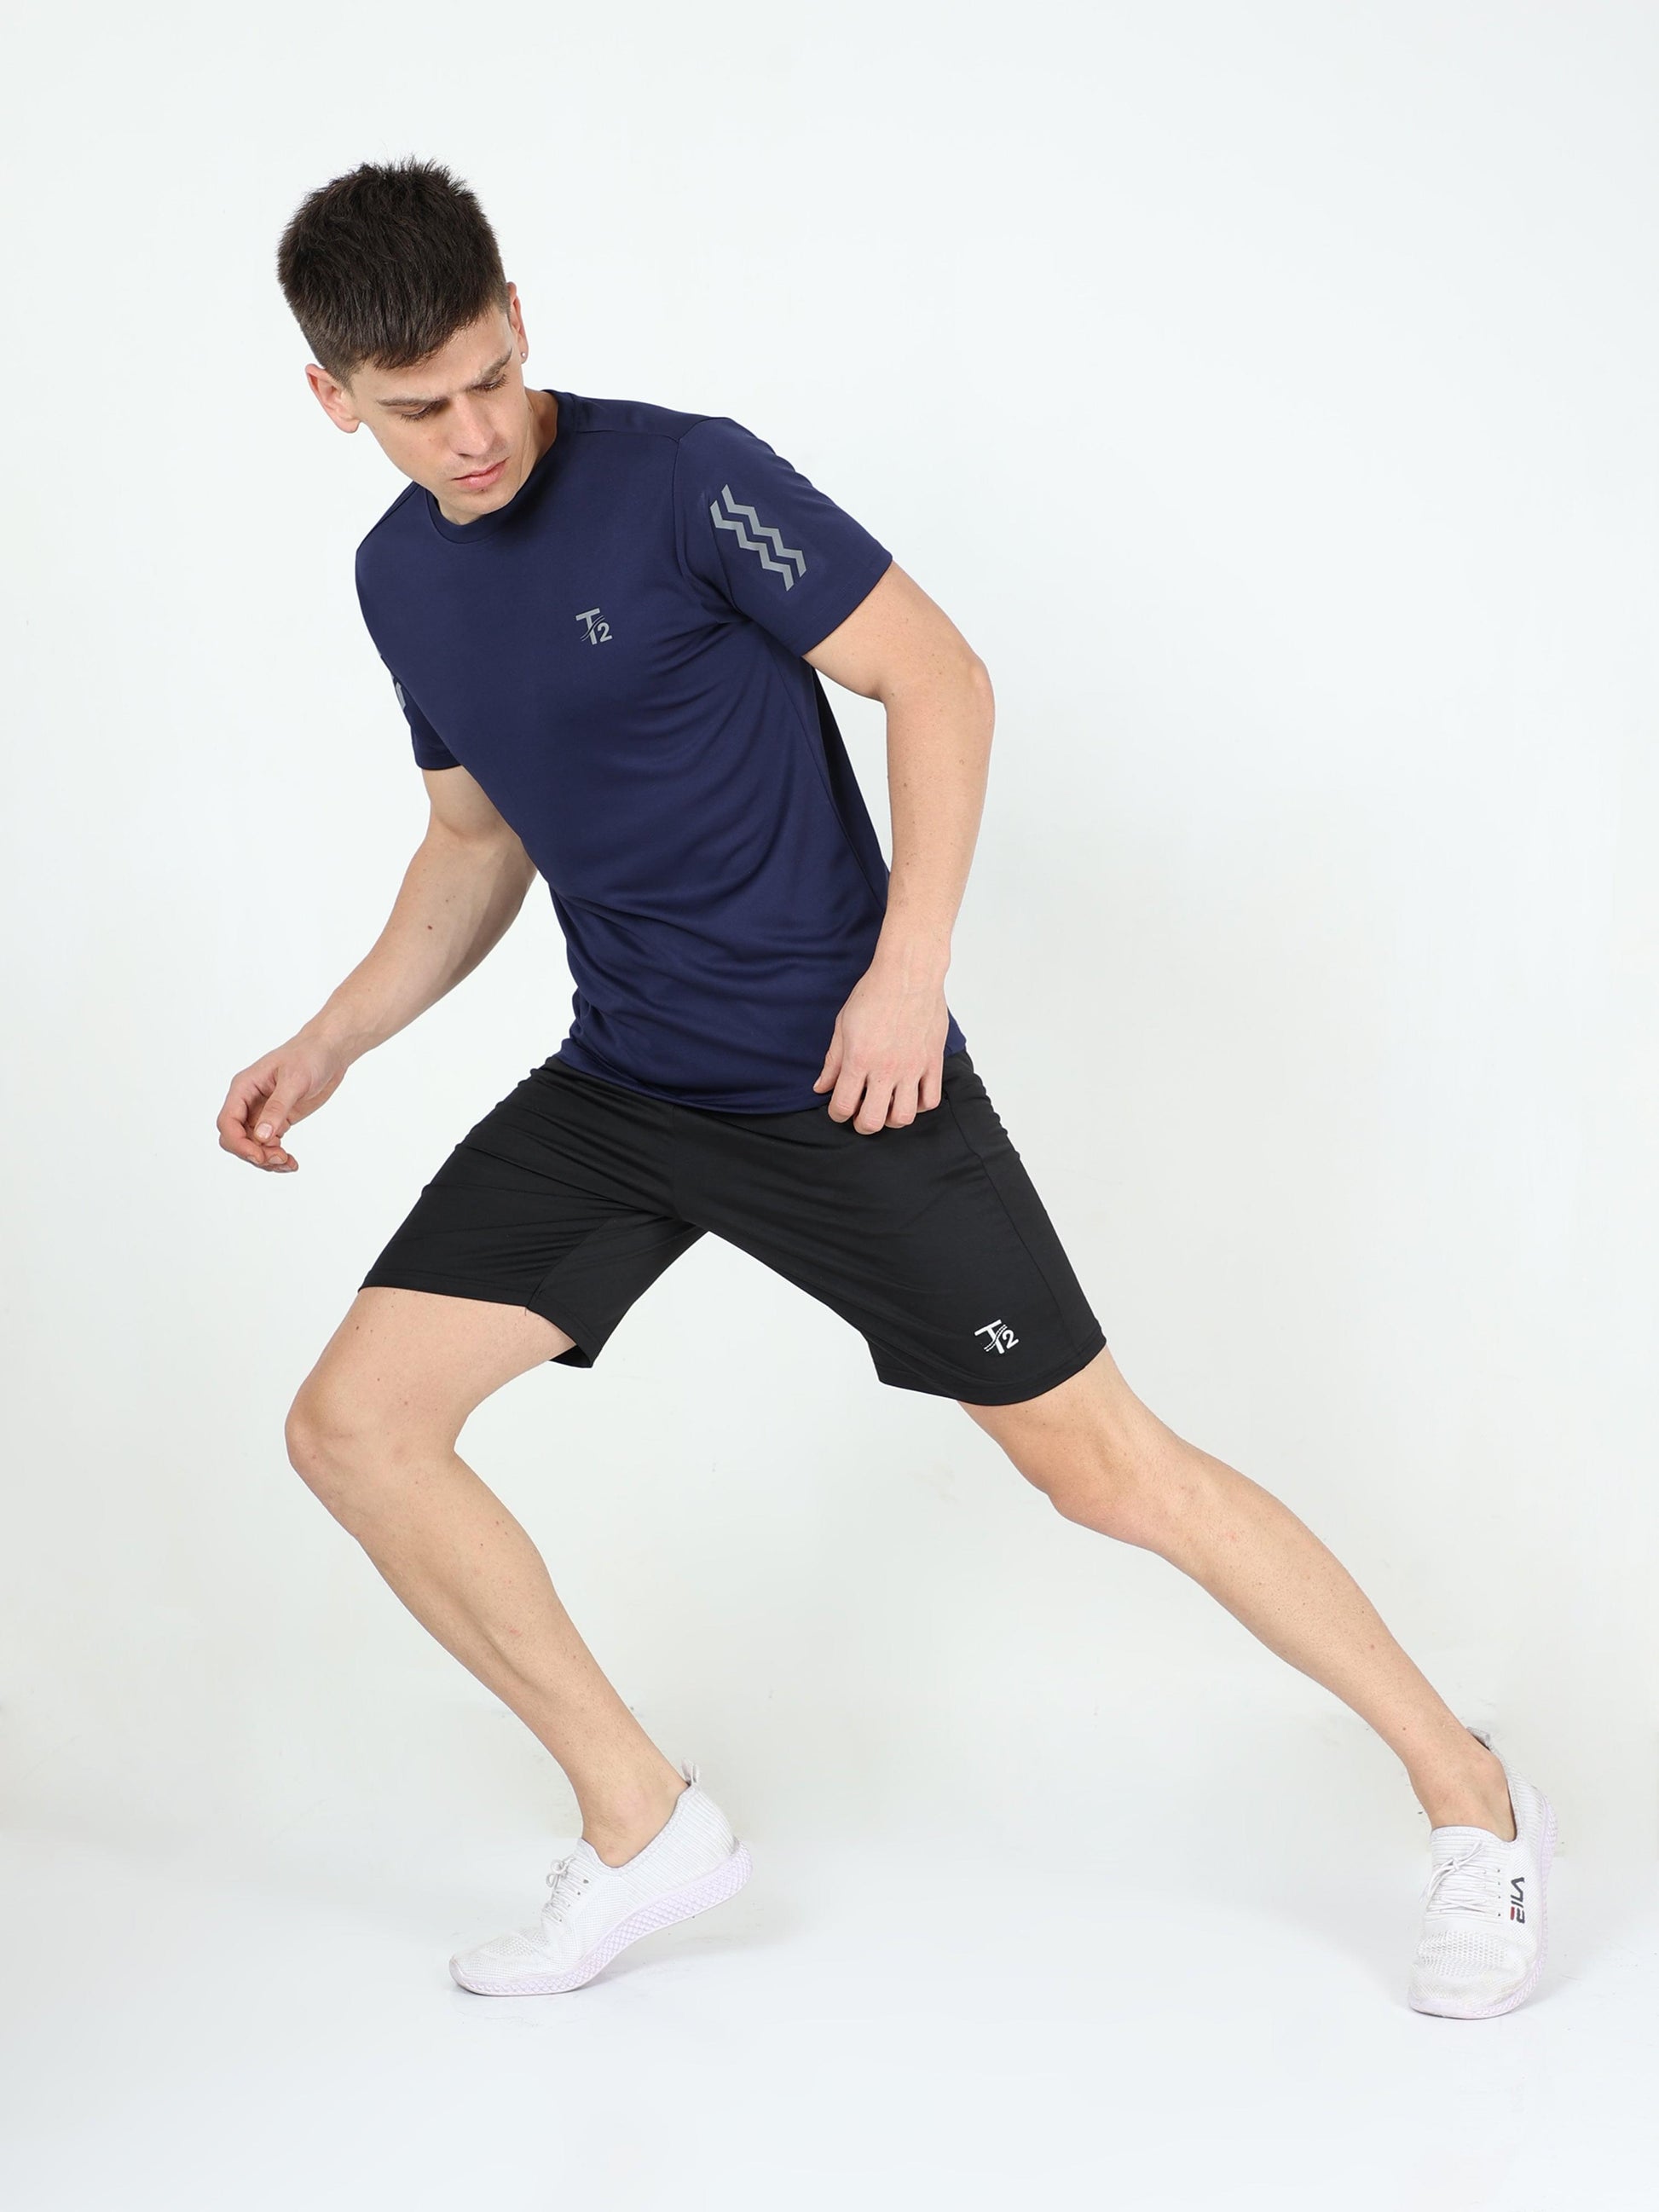 Athleisure Men's Premium T-Shirt – Navy